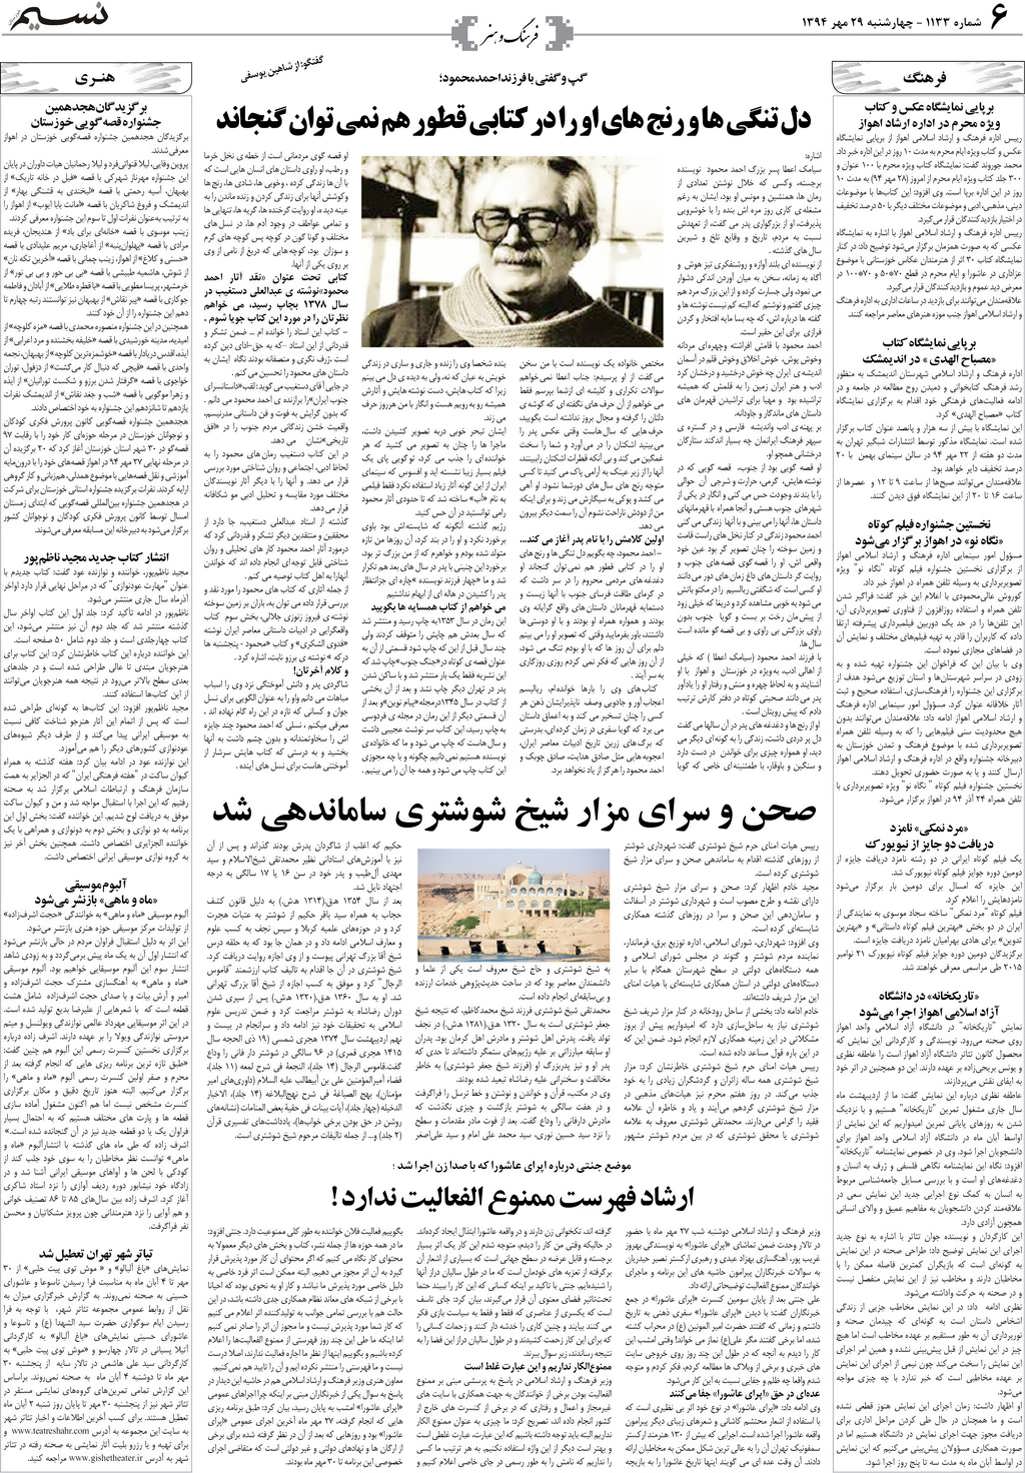 صفحه فرهنگ و هنر روزنامه نسیم شماره 1133